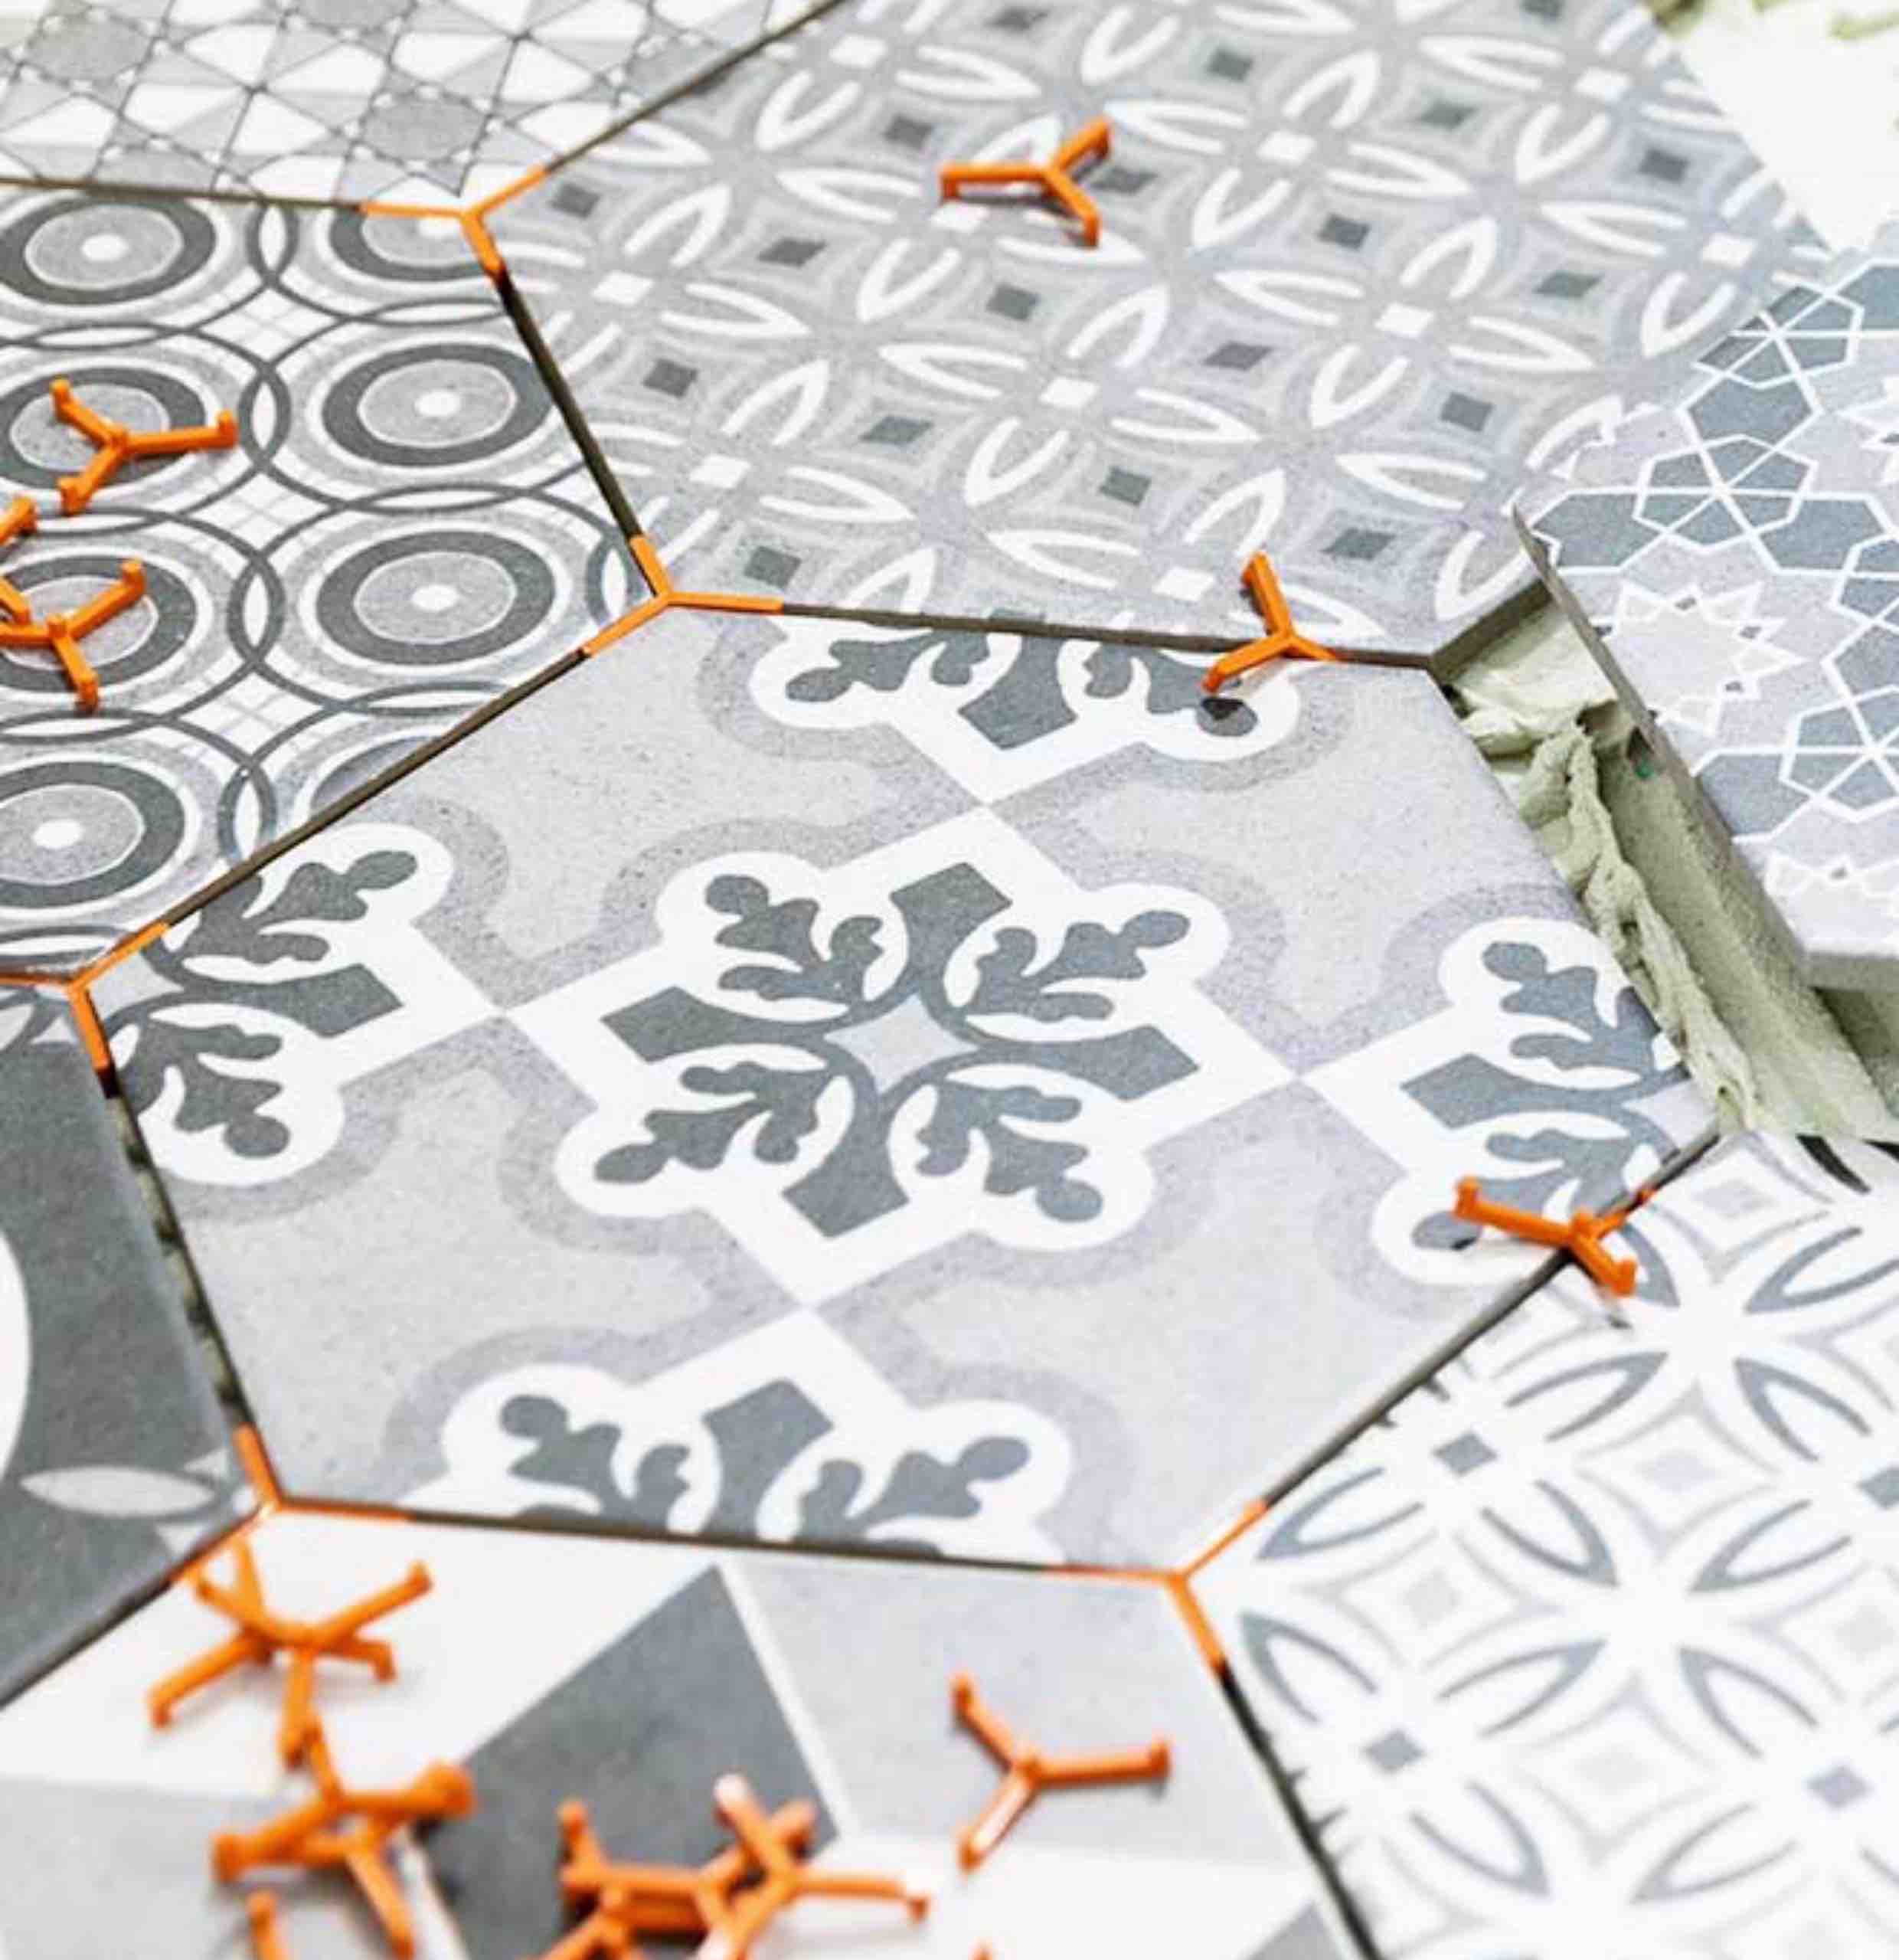 Trendy hexagonal tiles installed by Footprints Floors.